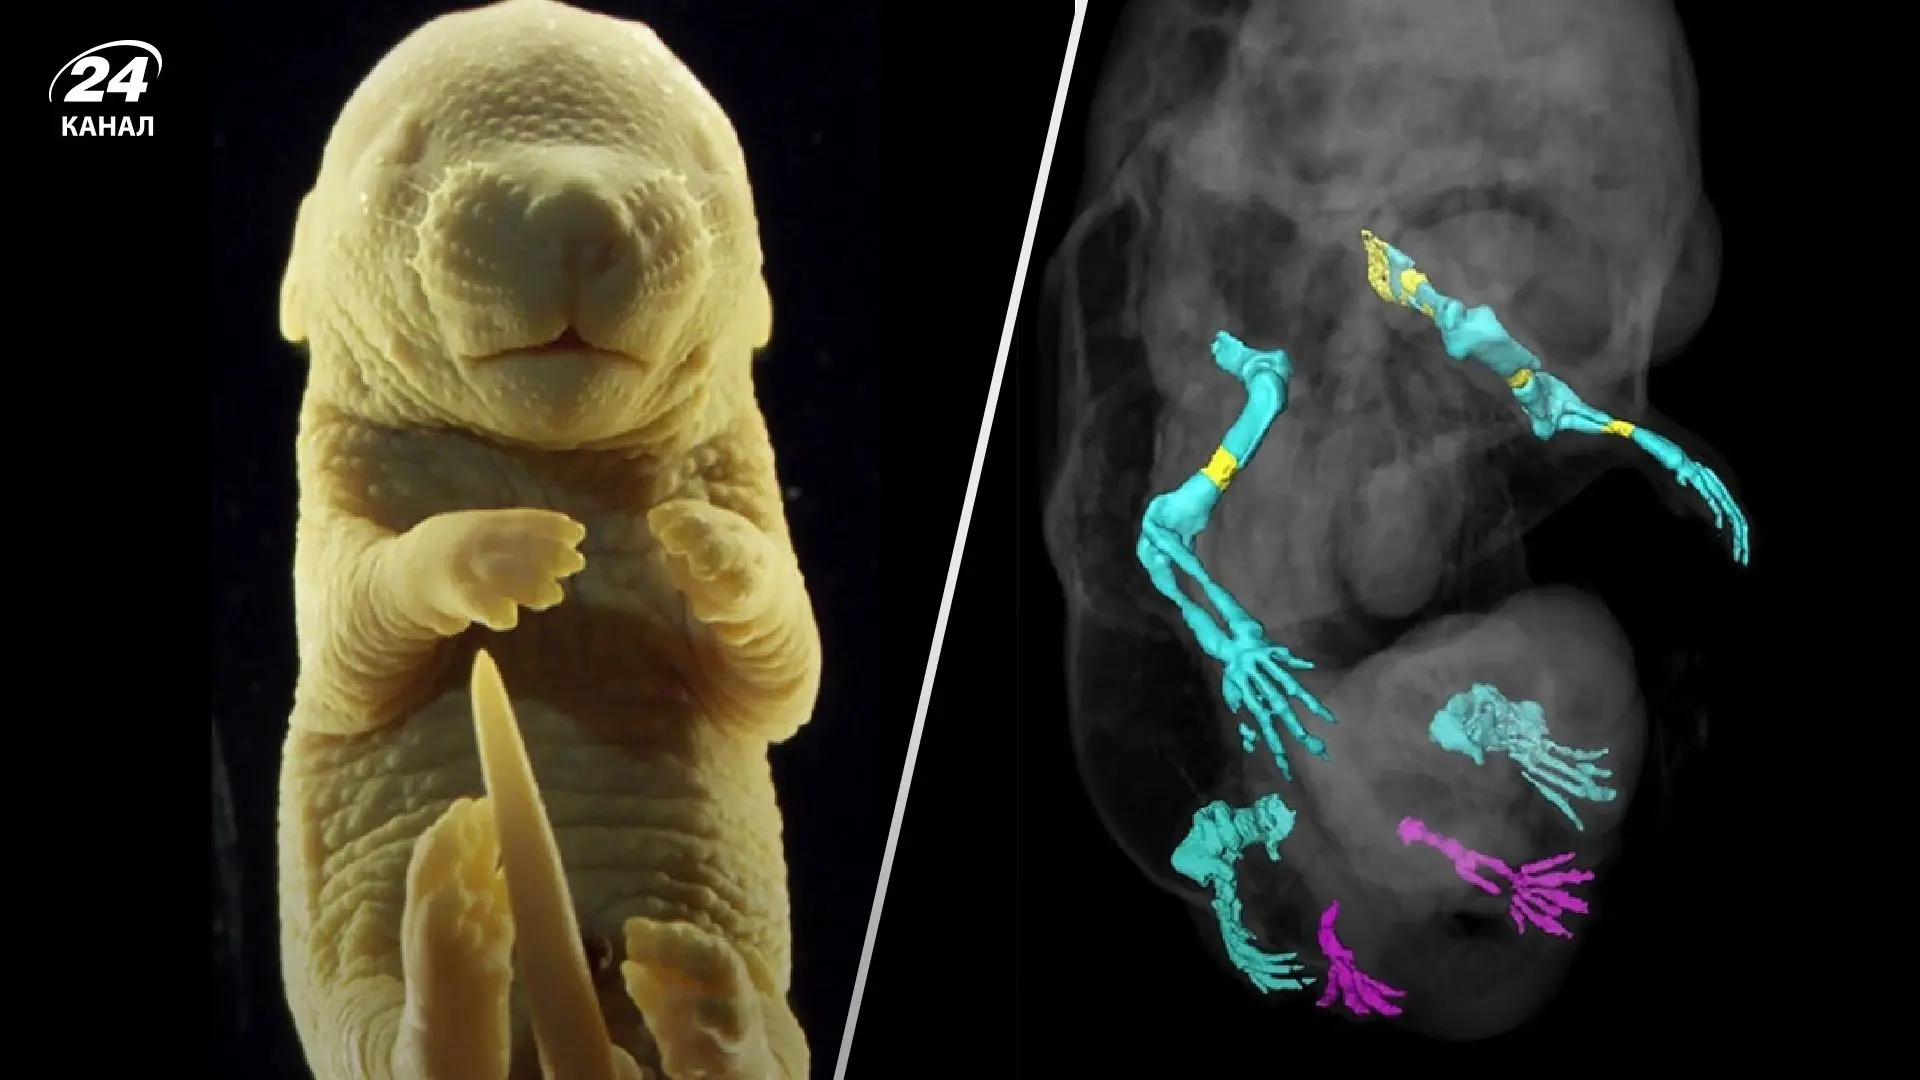 Вчені успішно створили ембріон шестипальцевої миші: як це допоможе науці?